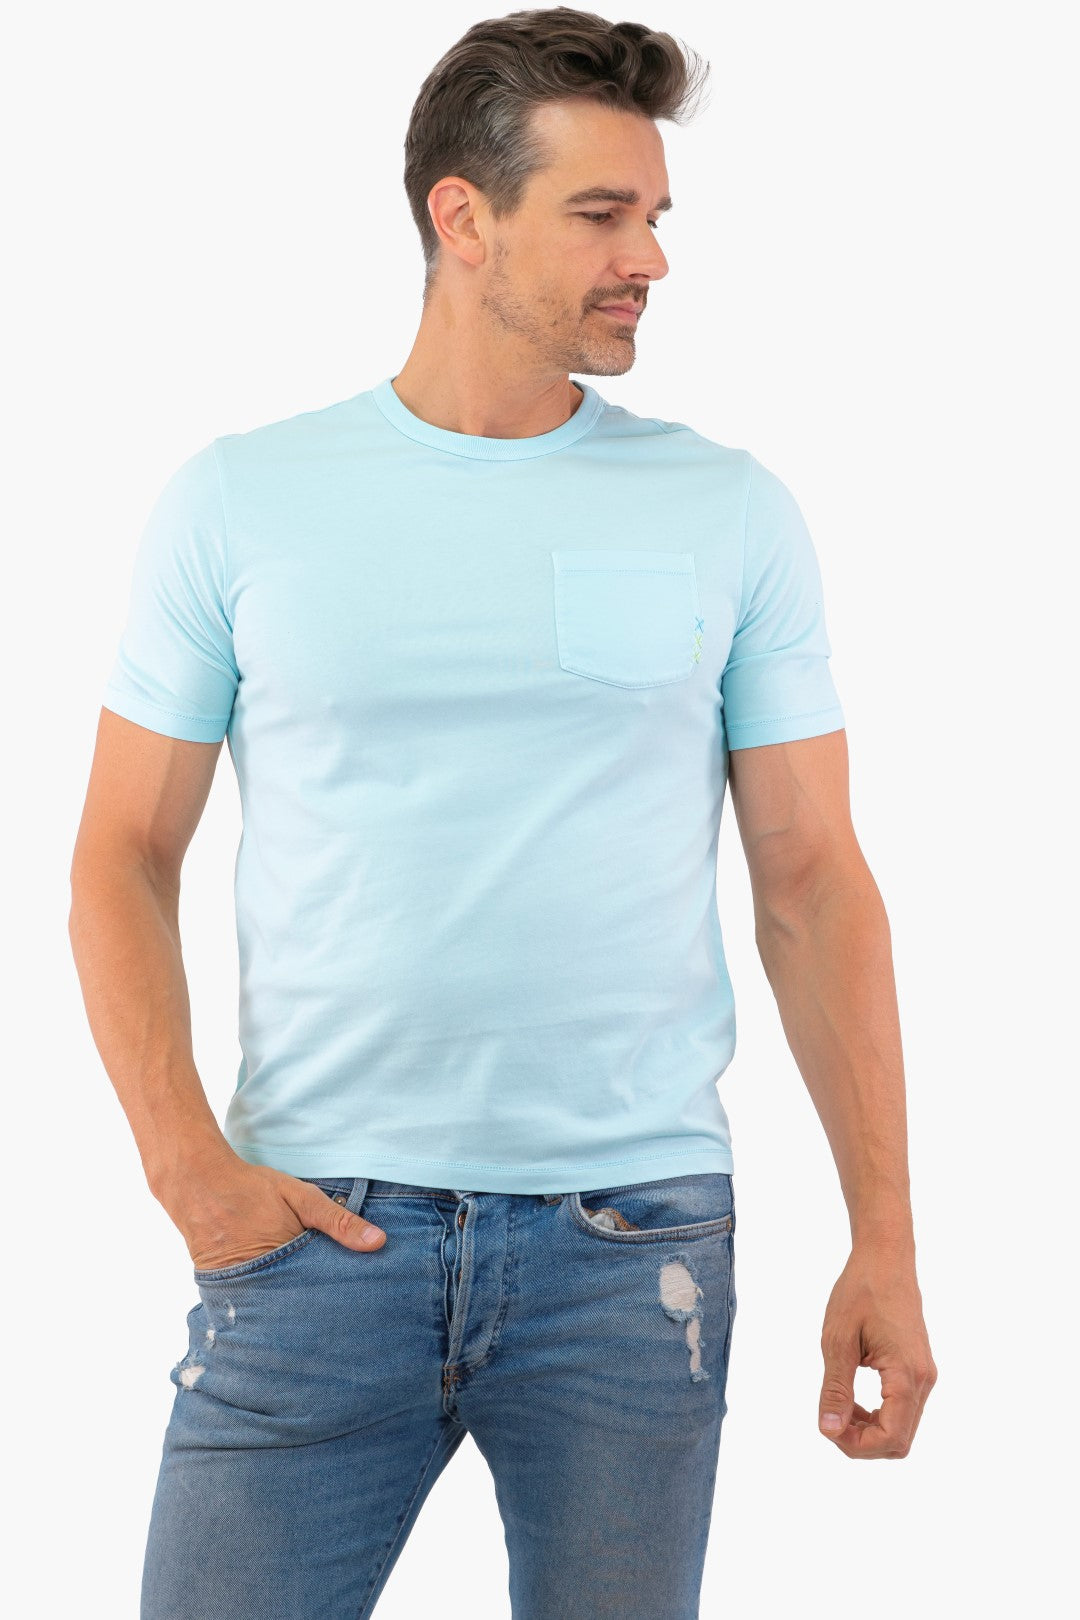 Scotch&amp;Soda T-Shirt in Blue color (Scot-175633-6899)